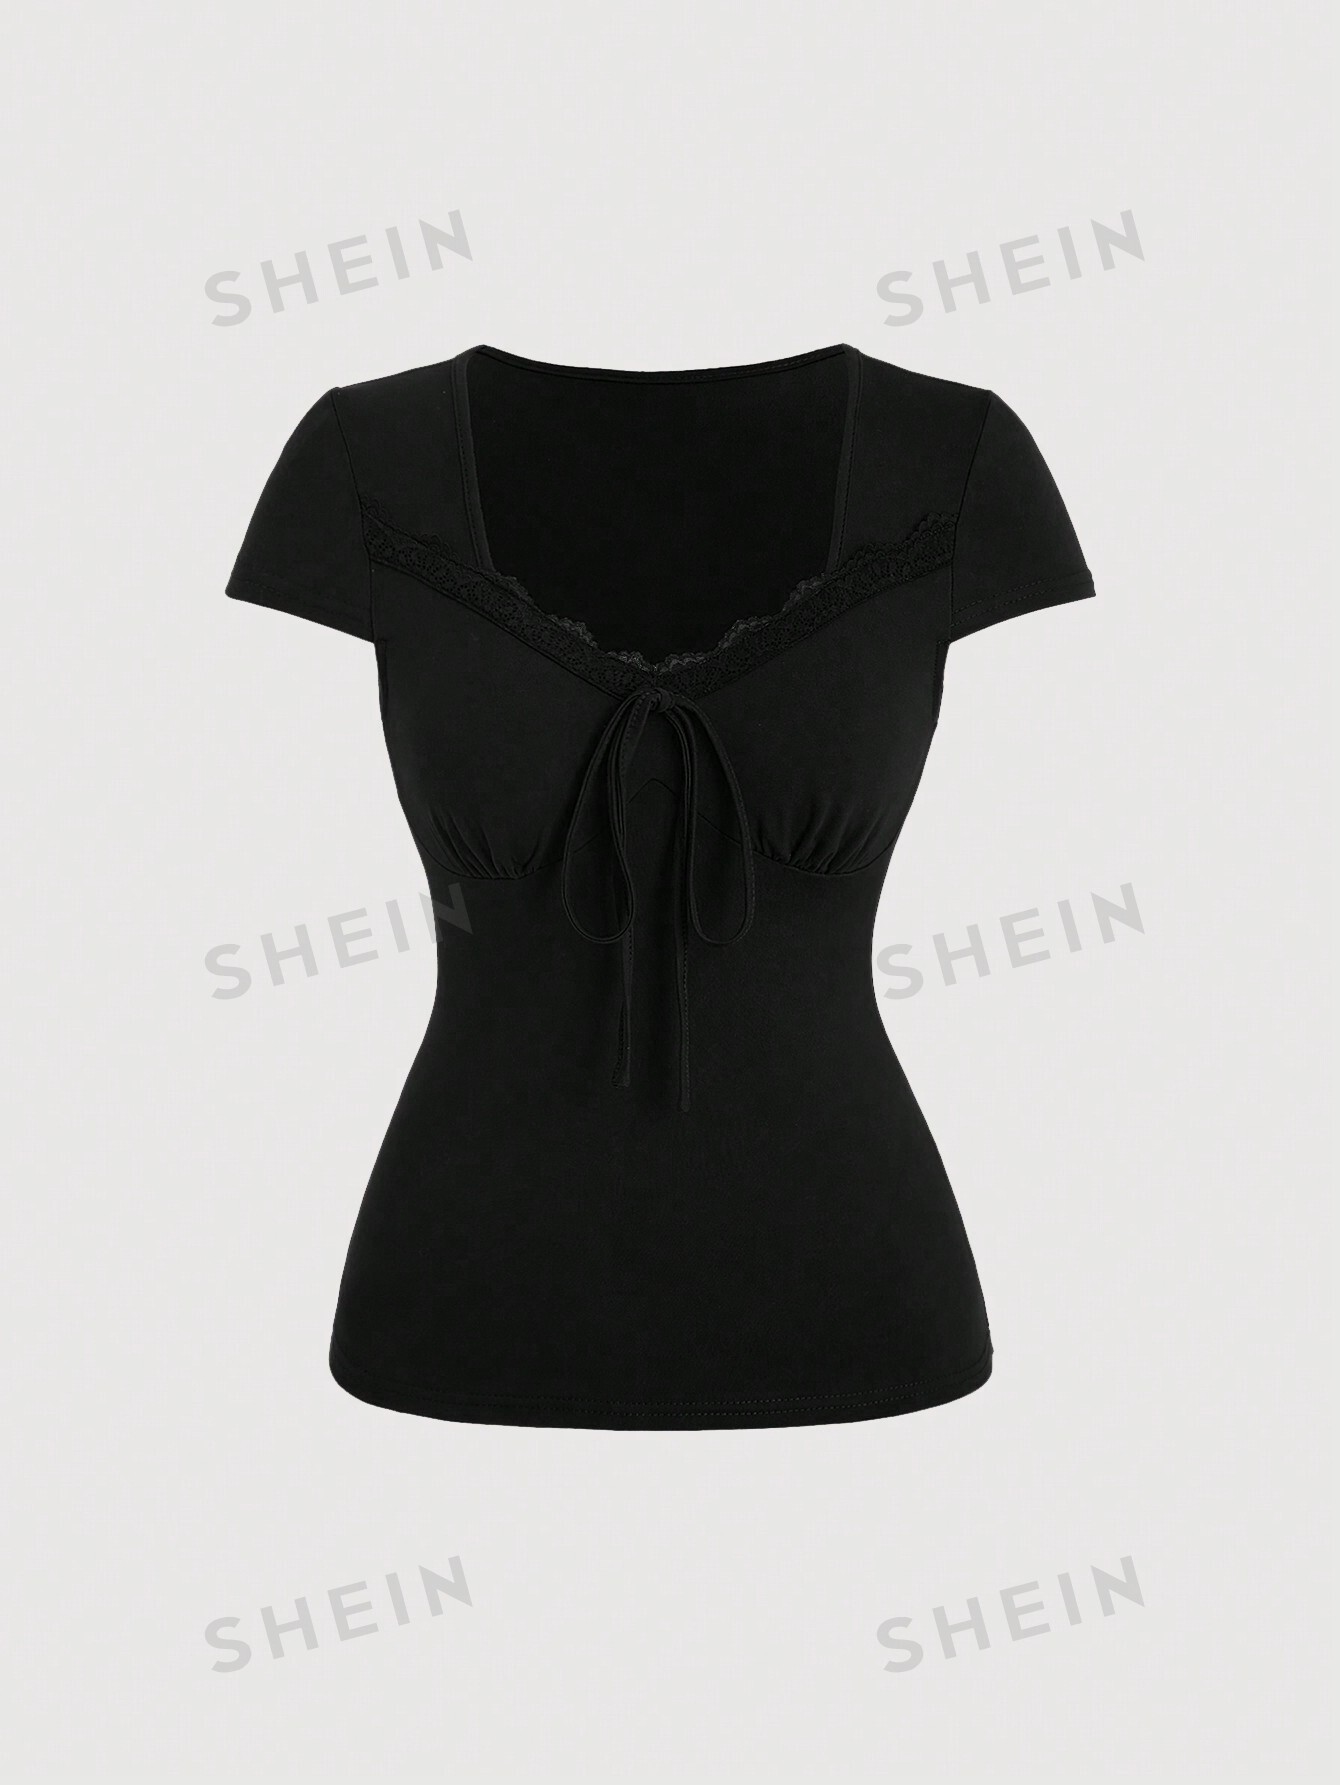 SHEIN Qutie Женская кружевная футболка в стиле пэчворк с цветочным принтом и вырезом в форме сердца, черный